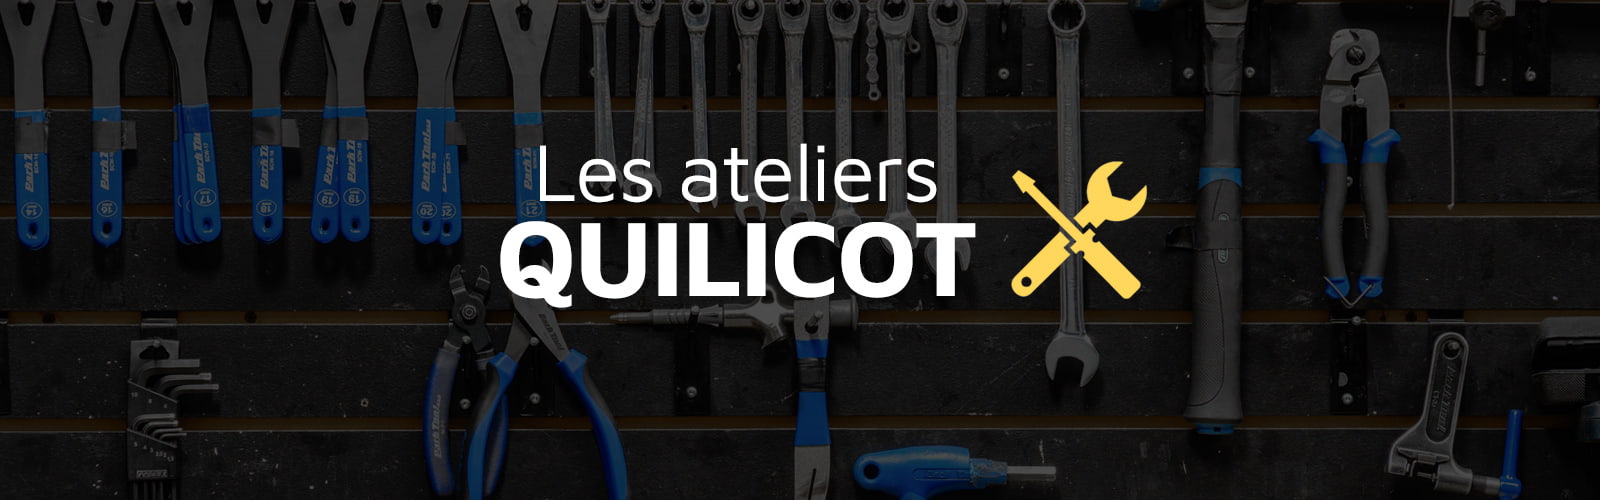 Cours mecanique Quilicot_atelier